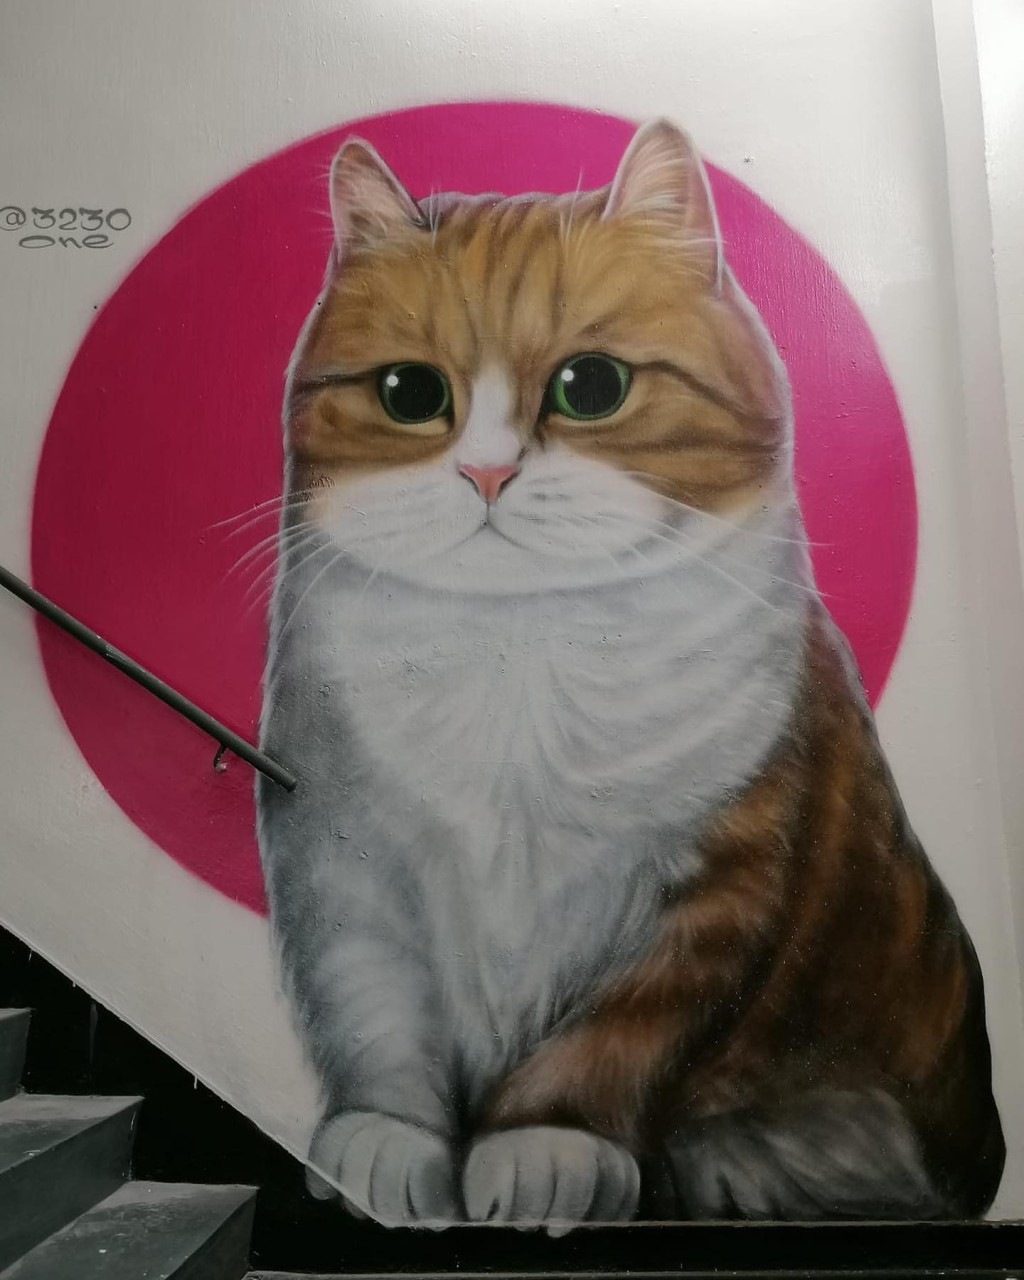 Vladimir在餐廳「Factory 99」的店外外牆上畫上第4幅貓作品。「Factory 99」FB